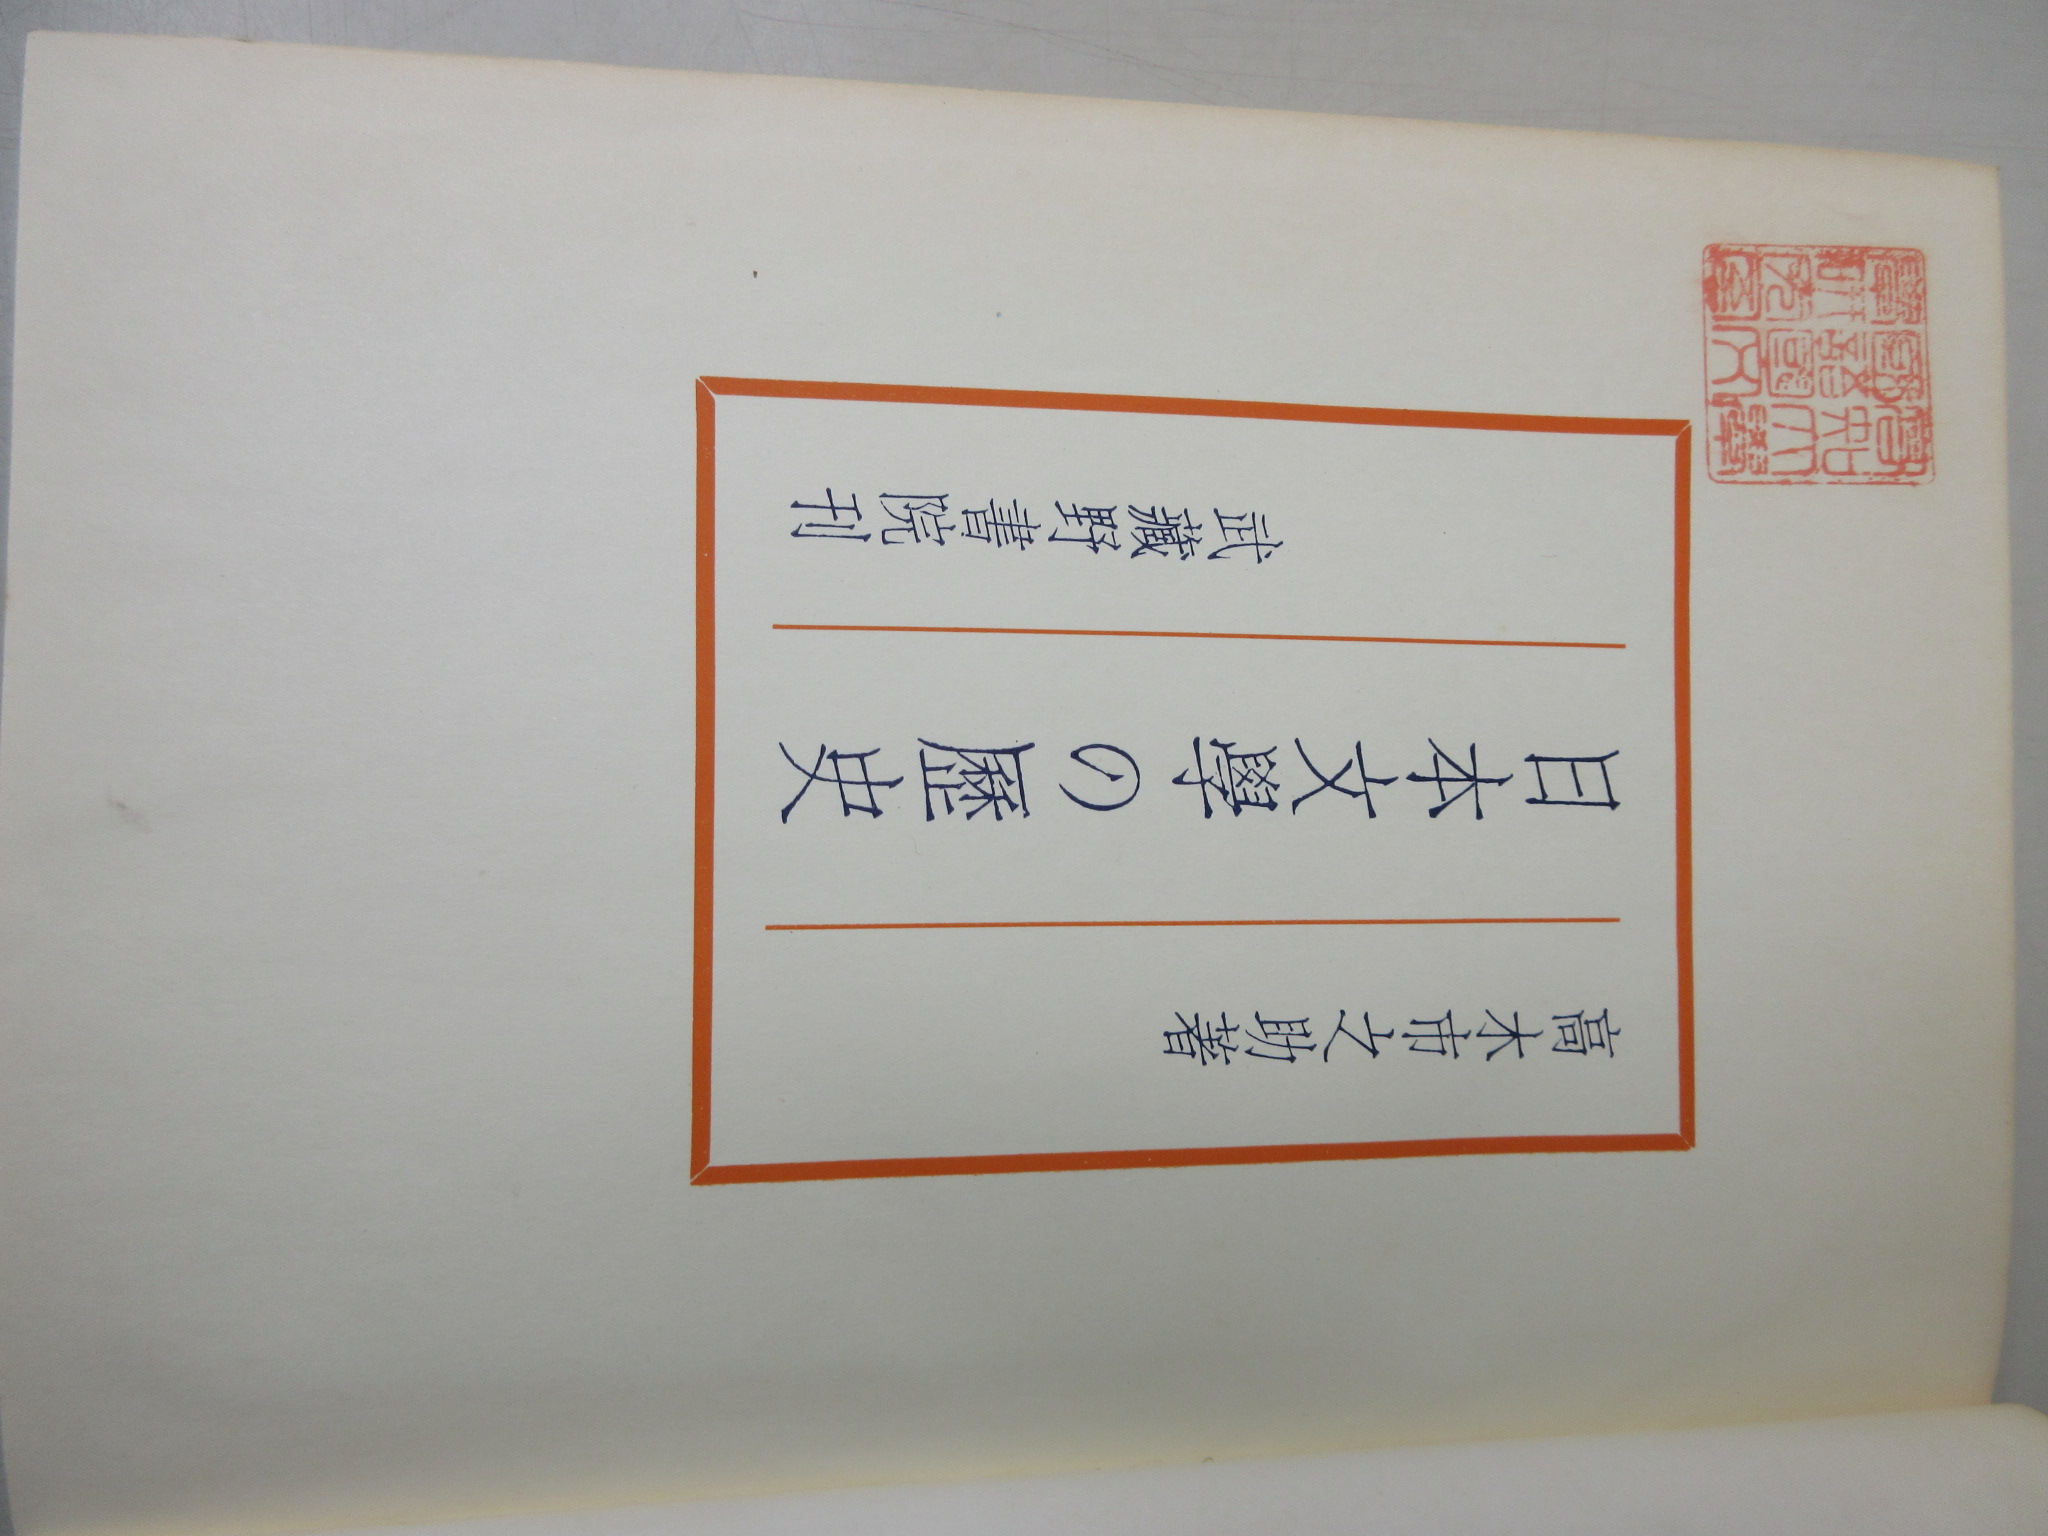 日本文學の歴史　高木市之助　昭和35年3月　武蔵野書院